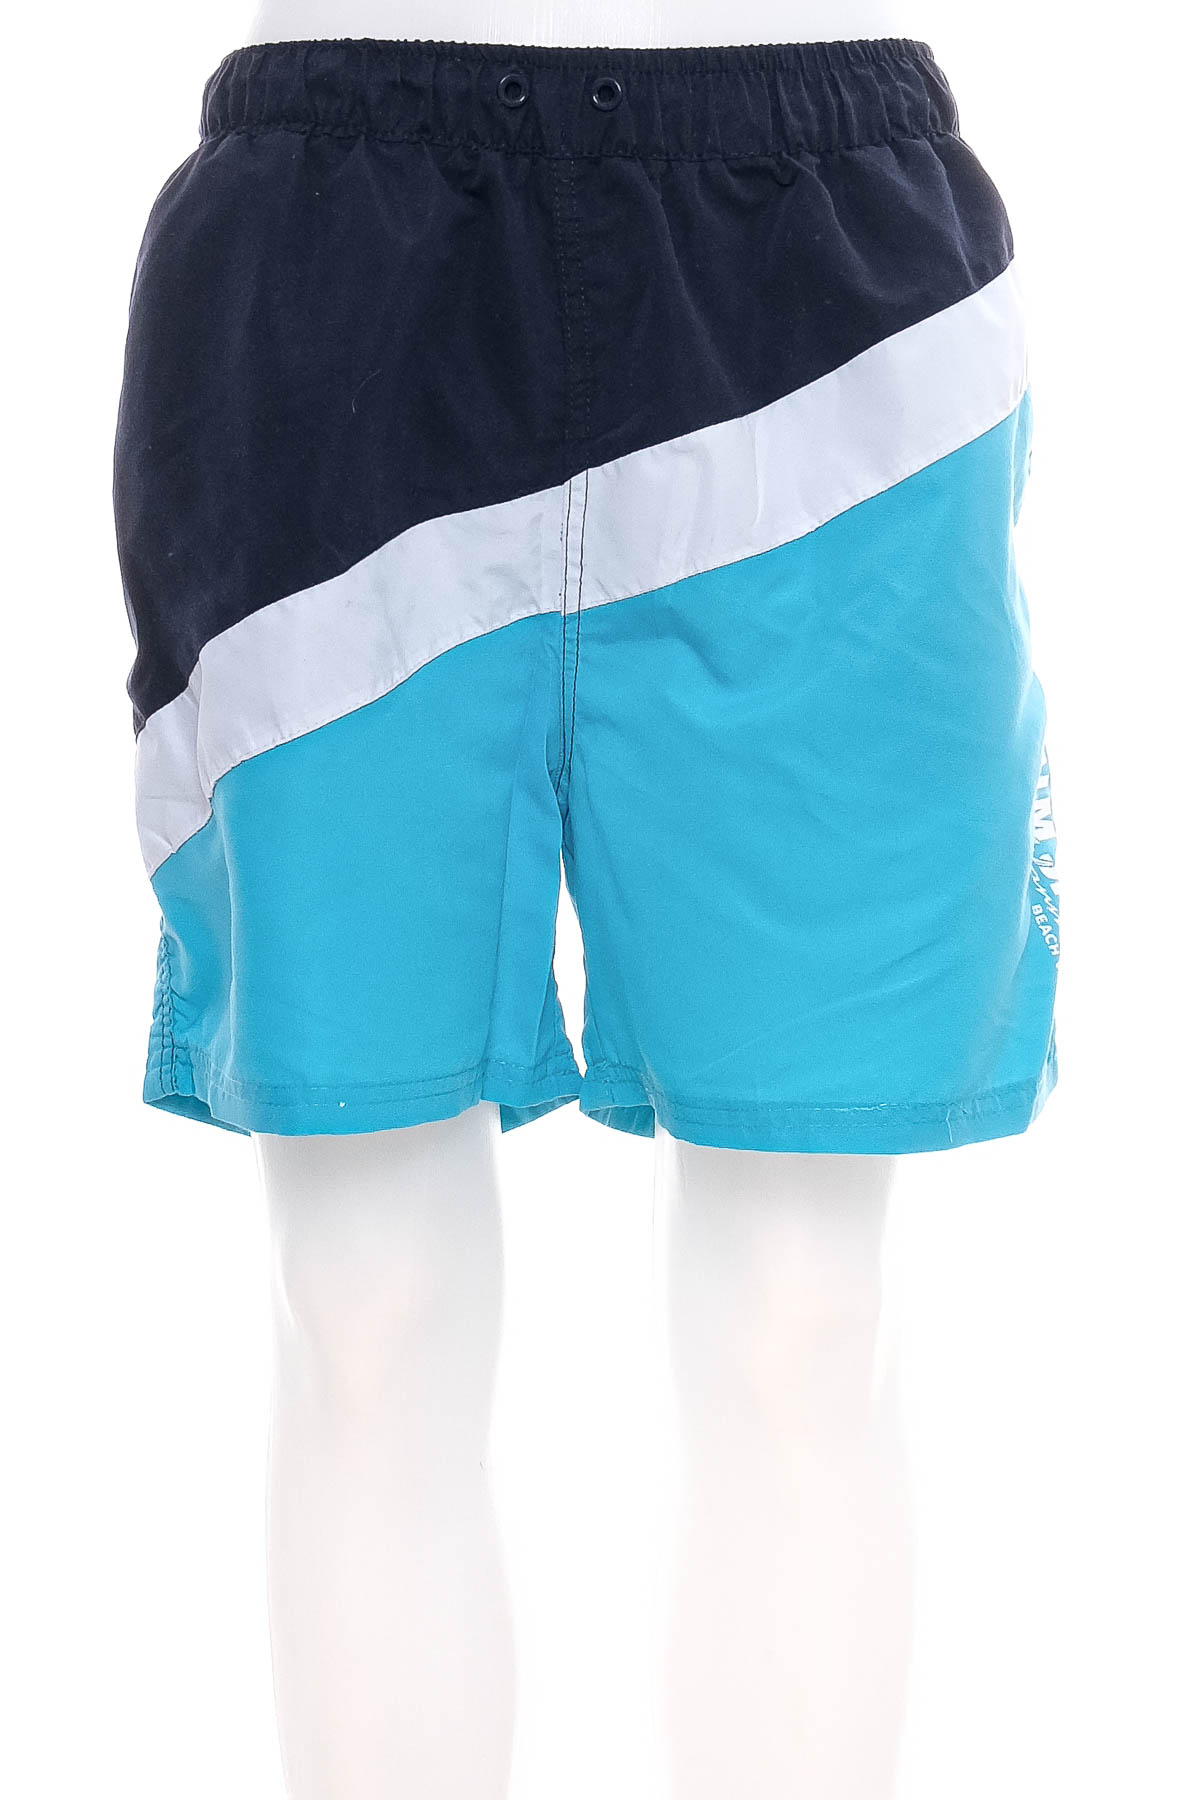 Men's shorts - Jean Pascale - 0